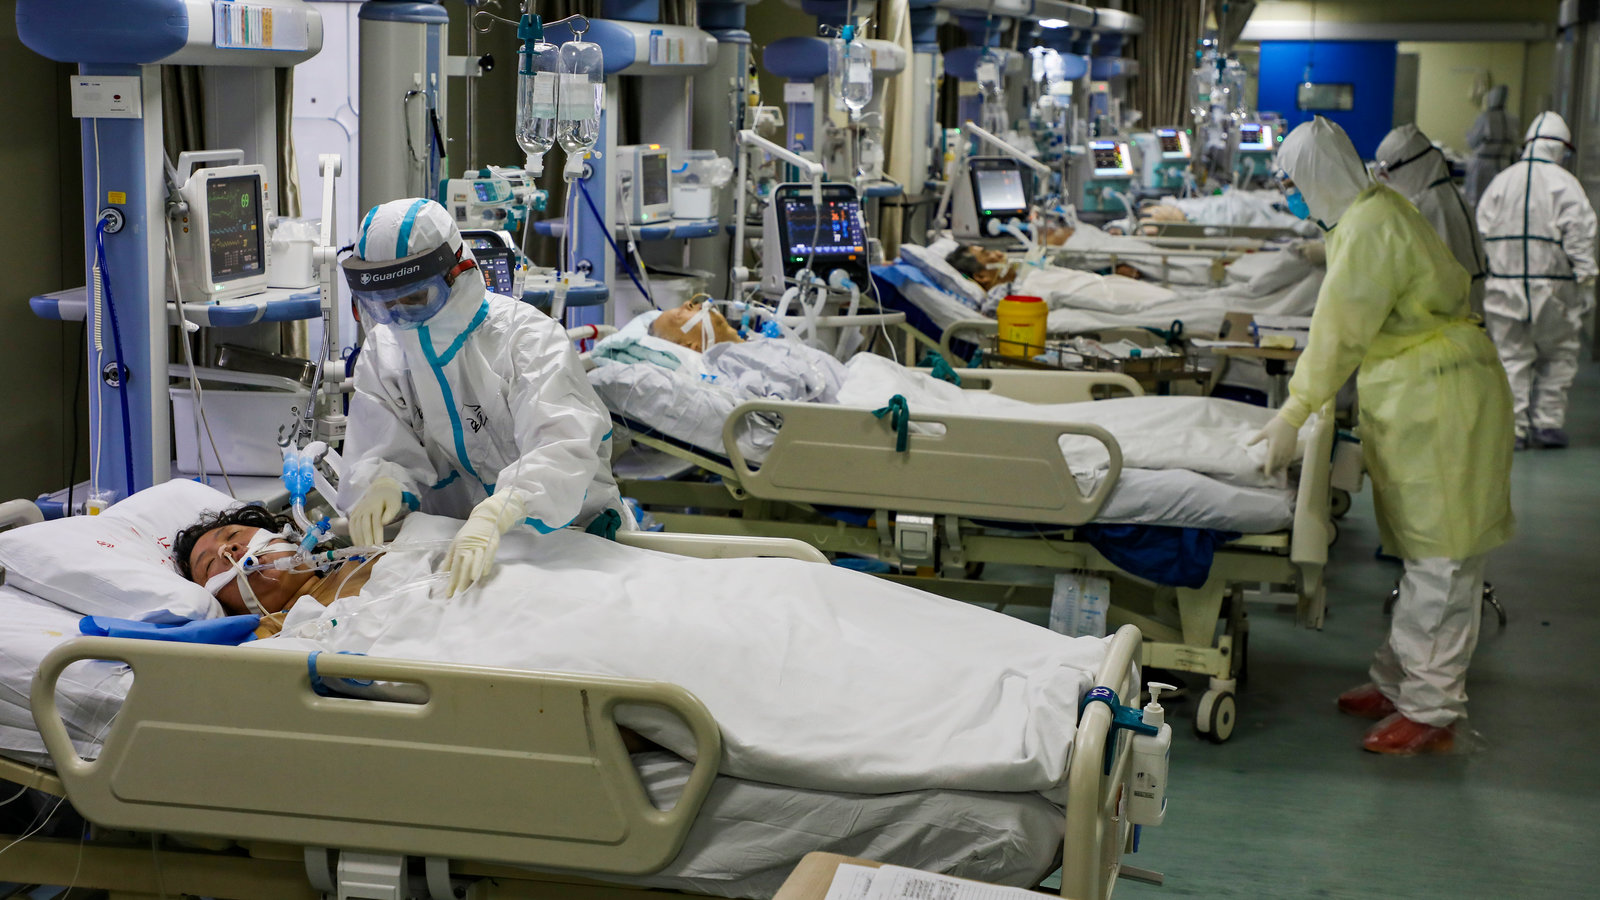 Apunto del colapso hospitales en China tras repunte de Covid-19